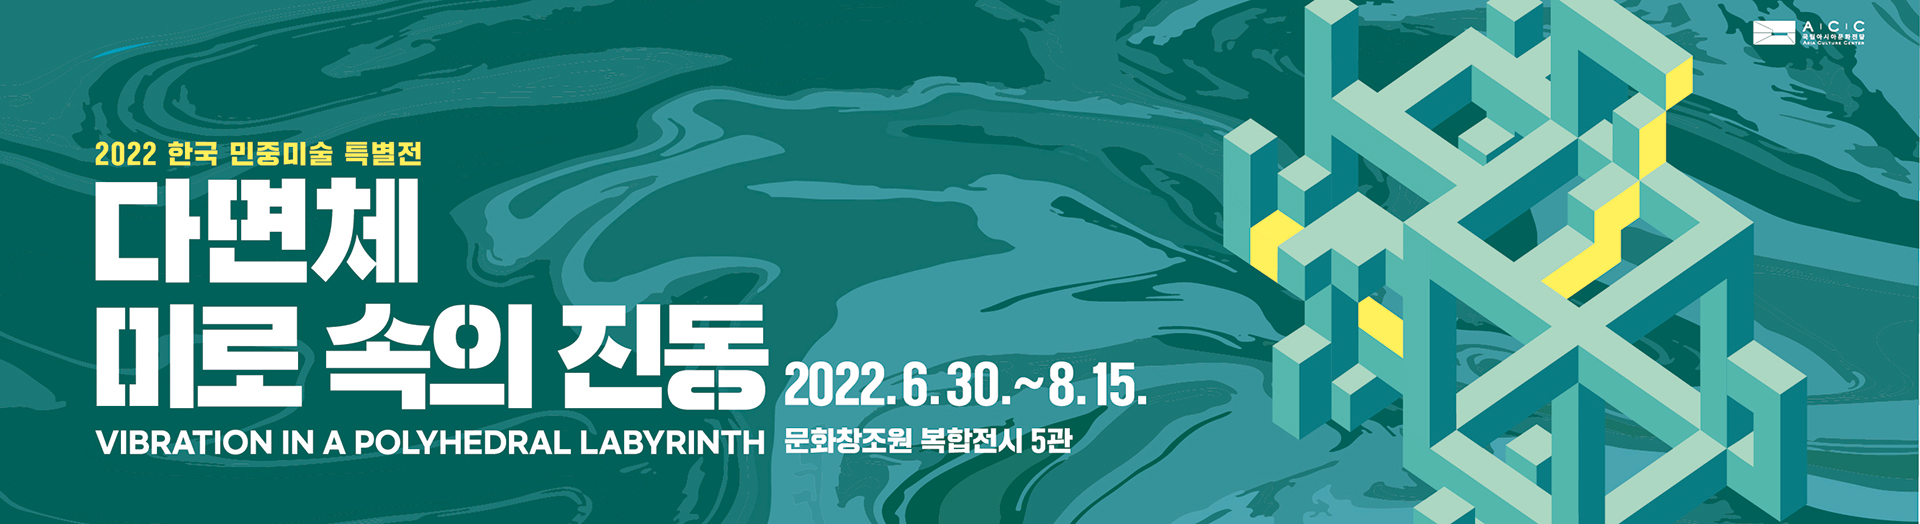 2022 한국민중미술 특별전
<다면체 미로 속의 진동>

2022. 6.30(목) ~ 8.15(월)